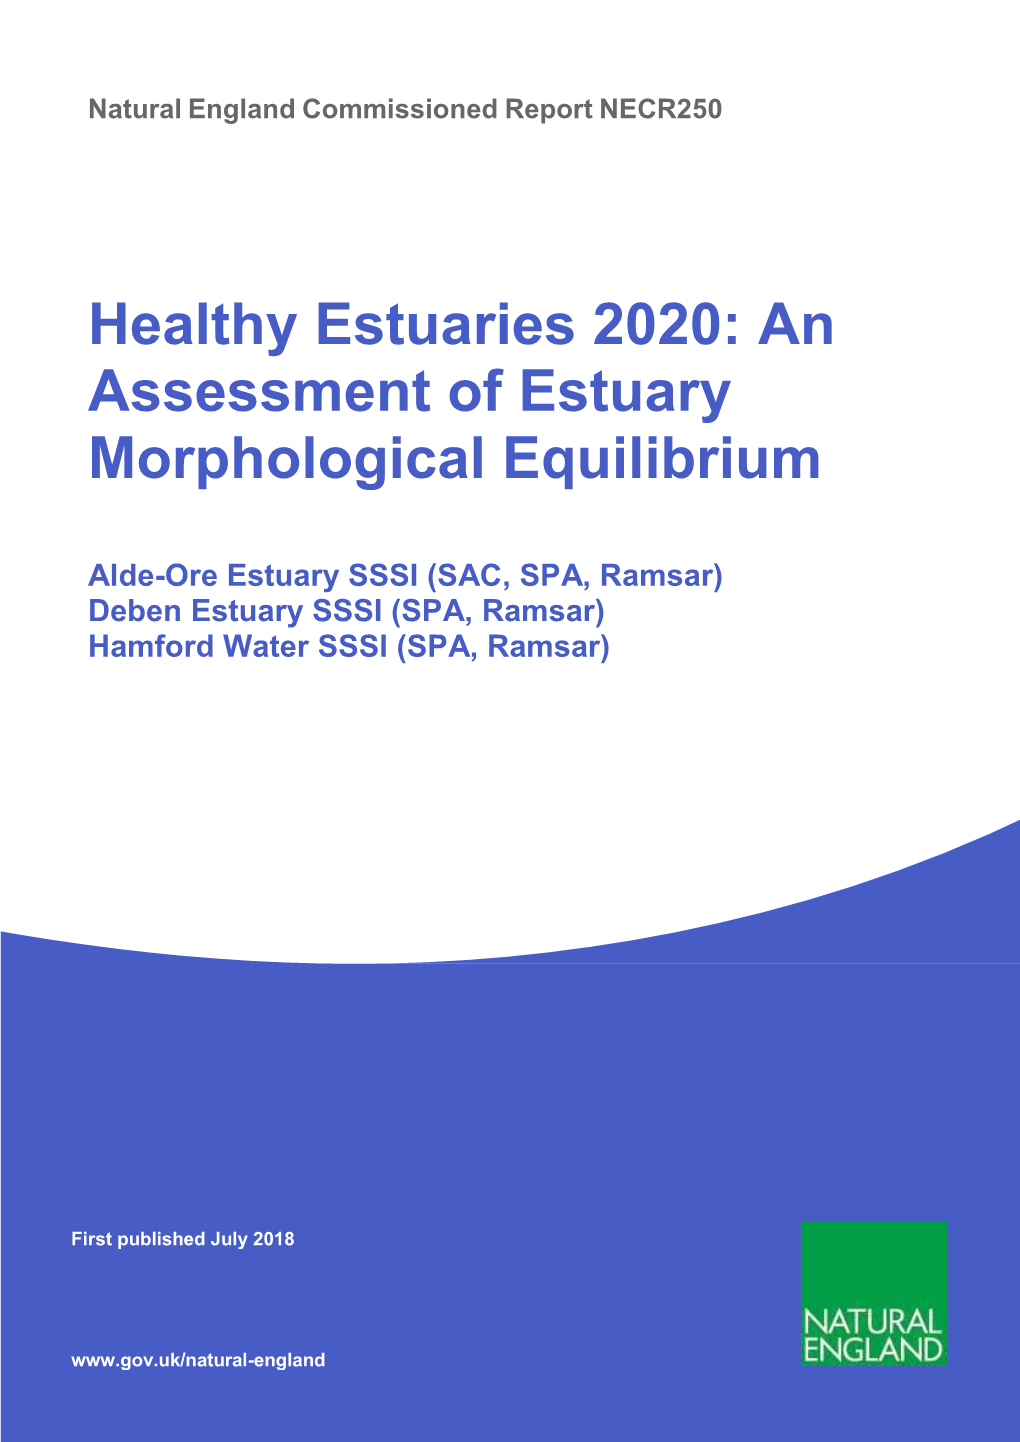 Healthy Estuaries 2020: an Assessment of Estuary Morphological Equilibrium